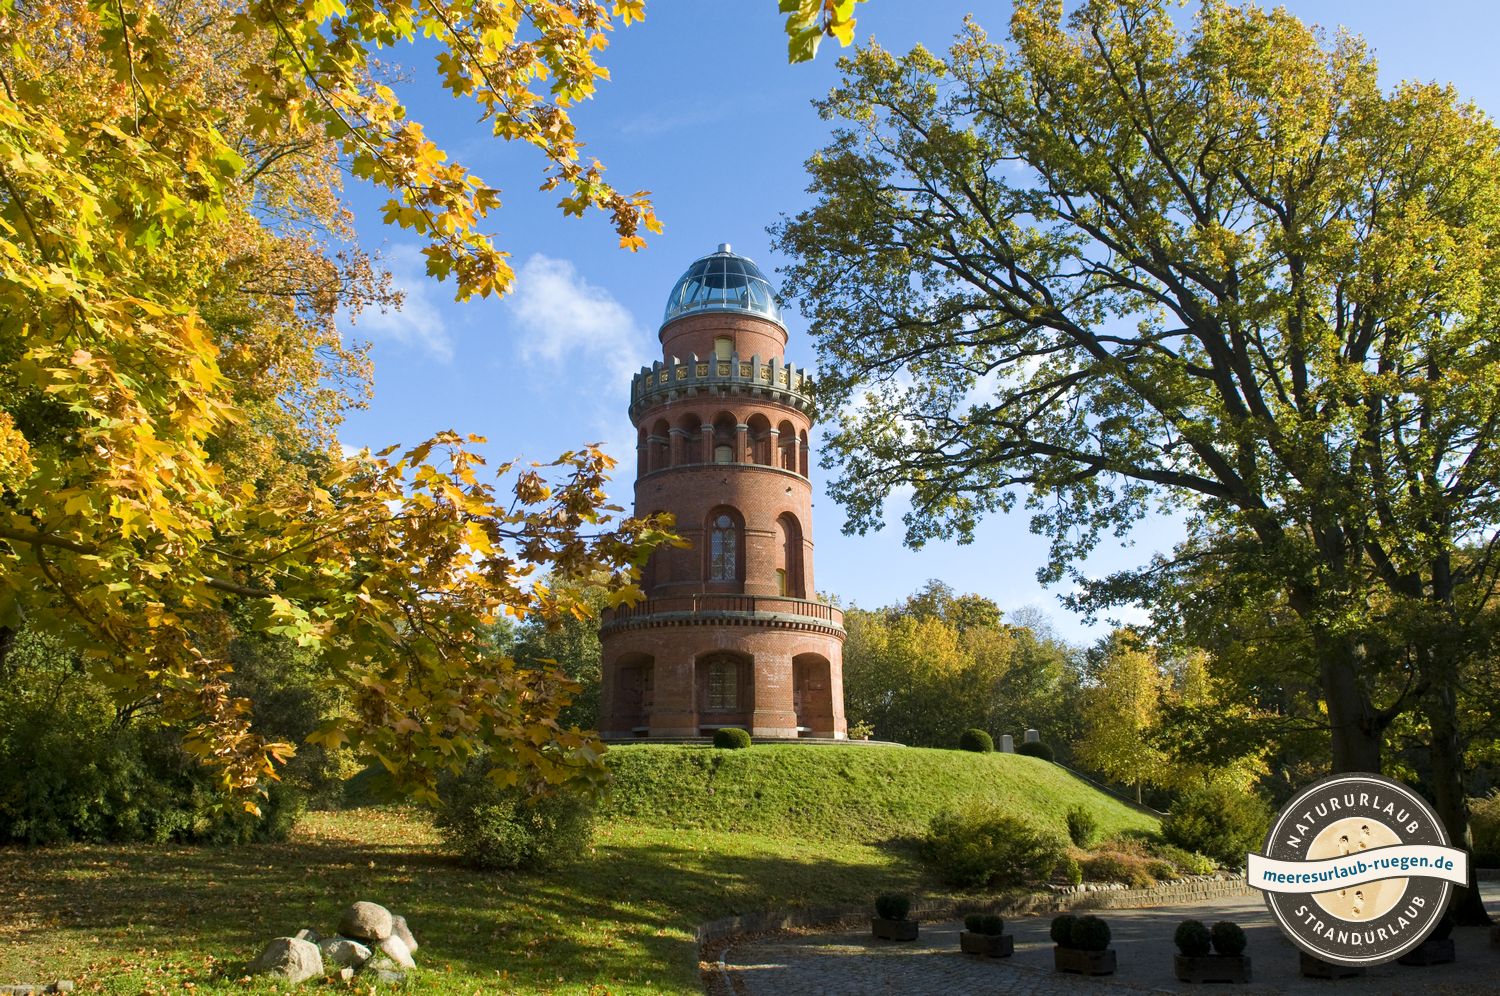 Der Rugardturm in Bergen auf der Insel Rügen gehört auch mit auf die Liste der Insidertipps der Insel Rügen